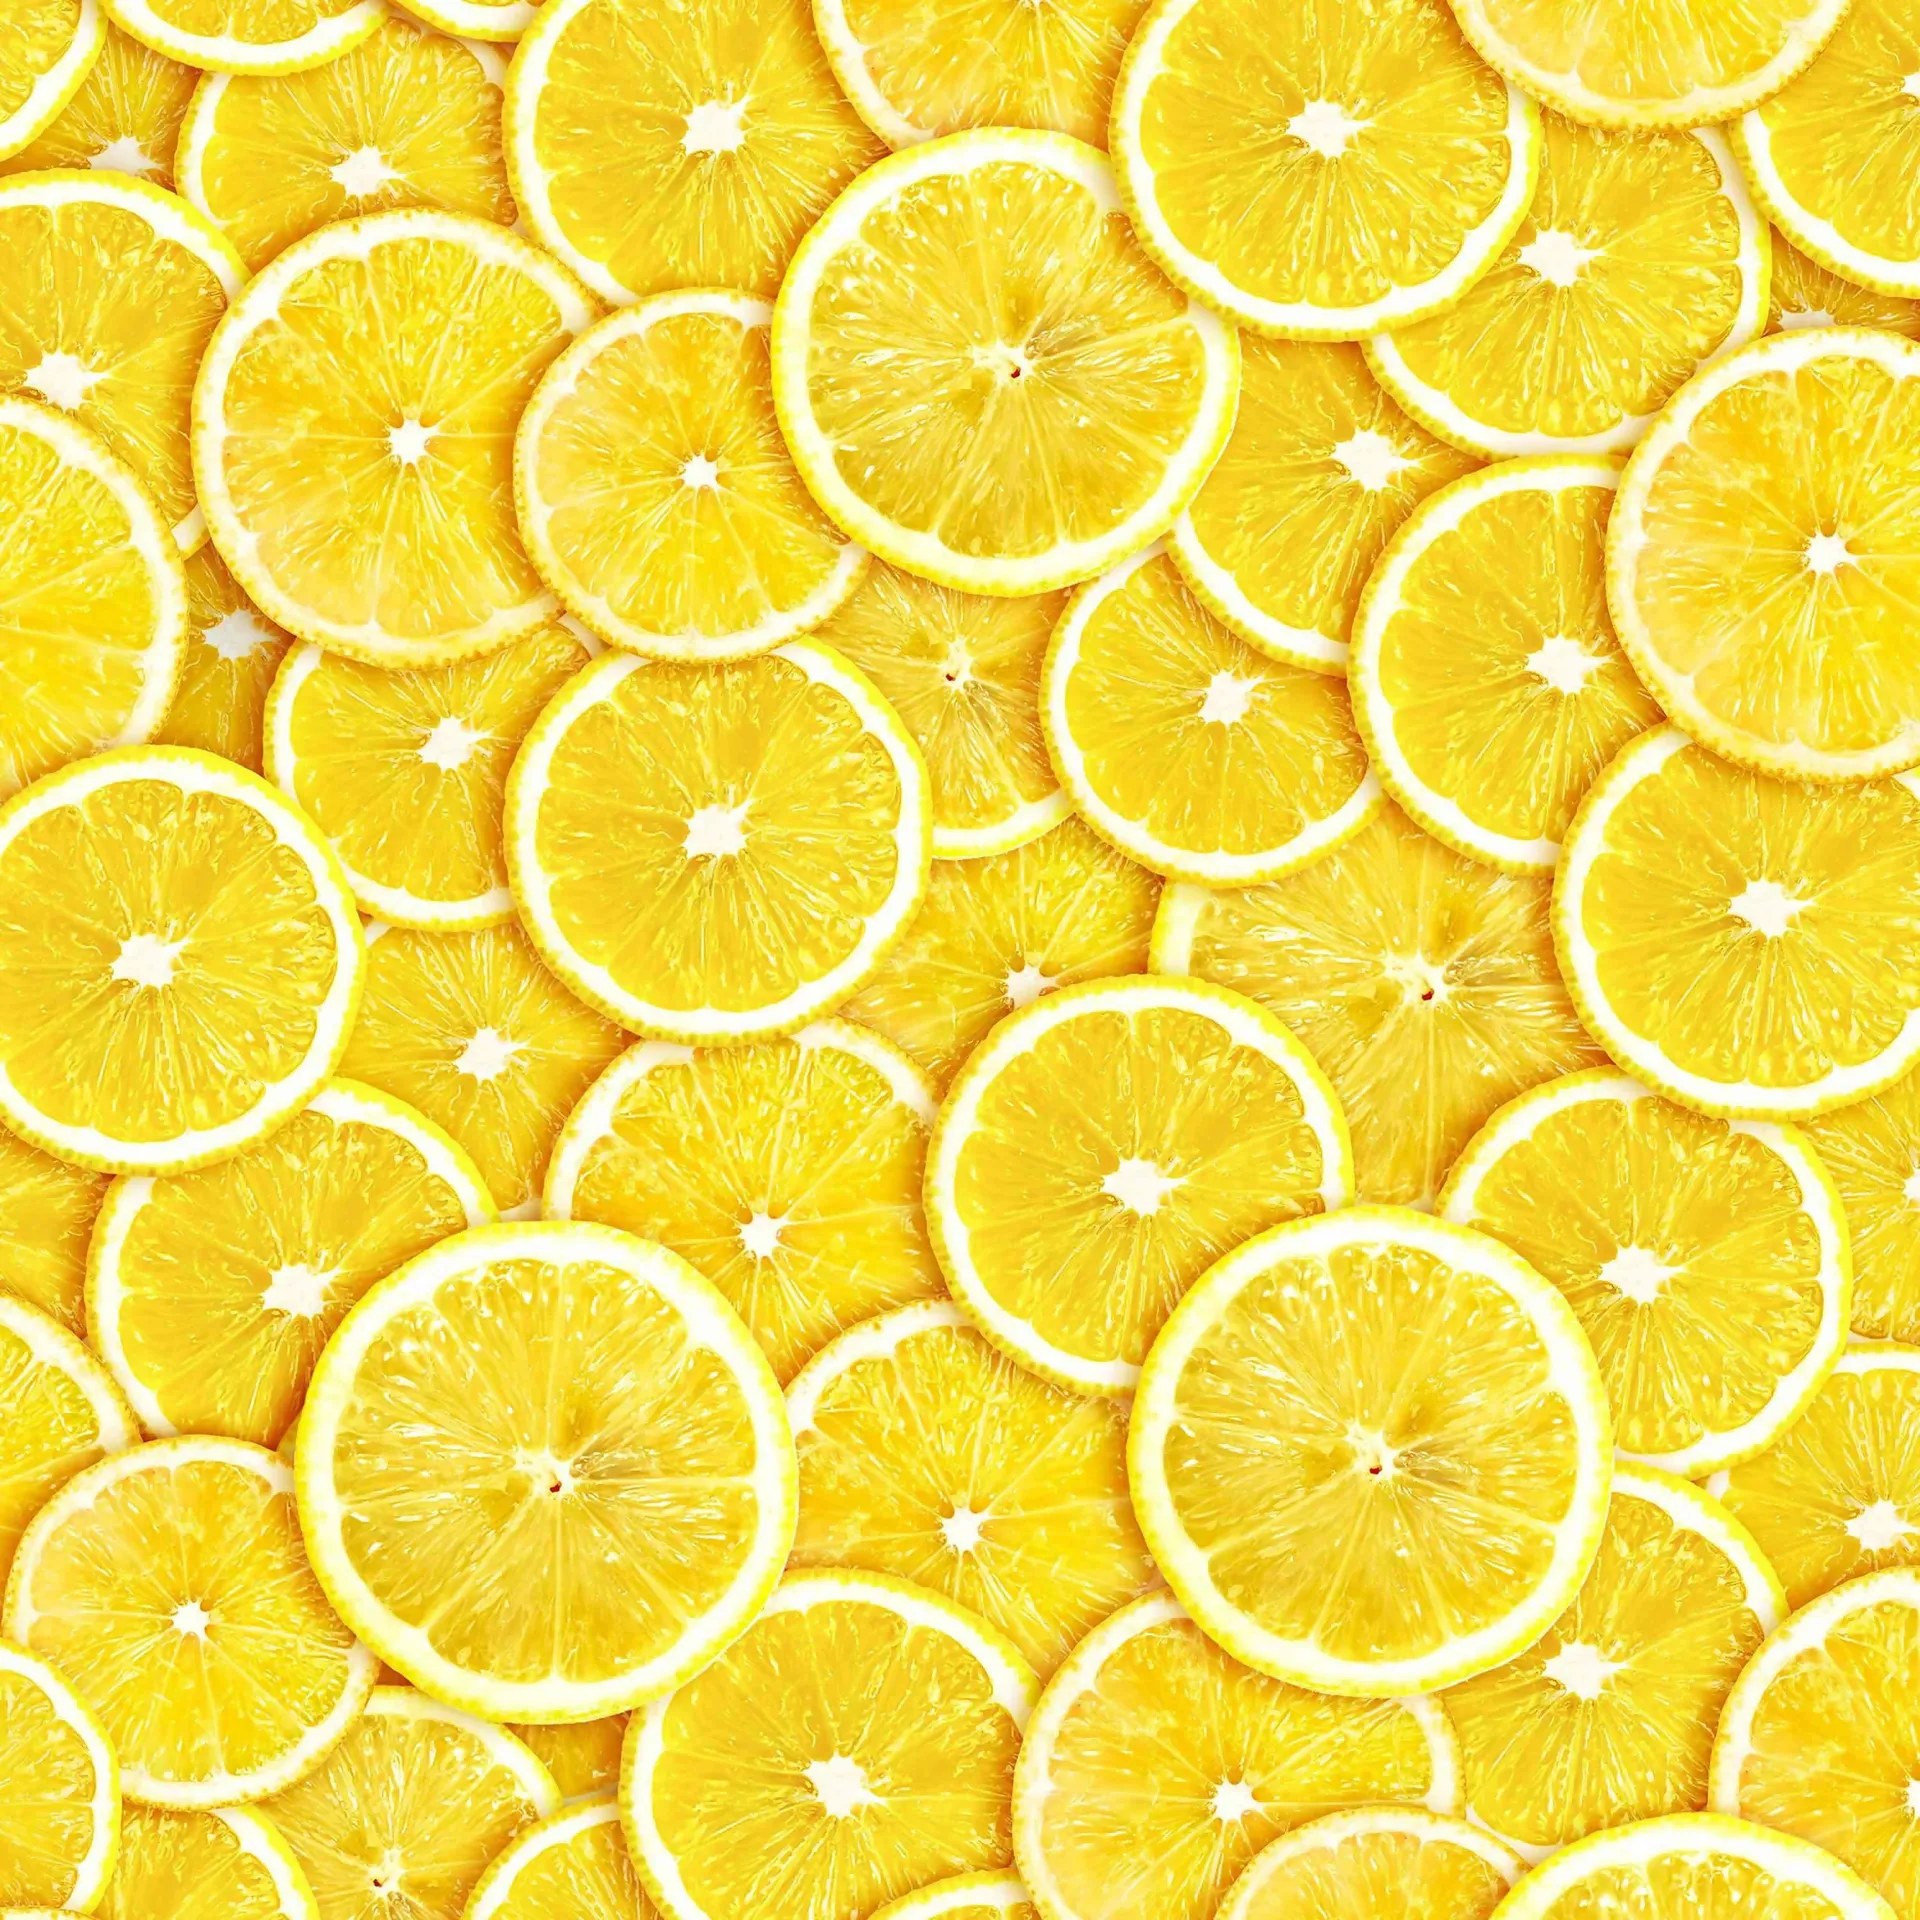 Lemon Iphone Wallpapers